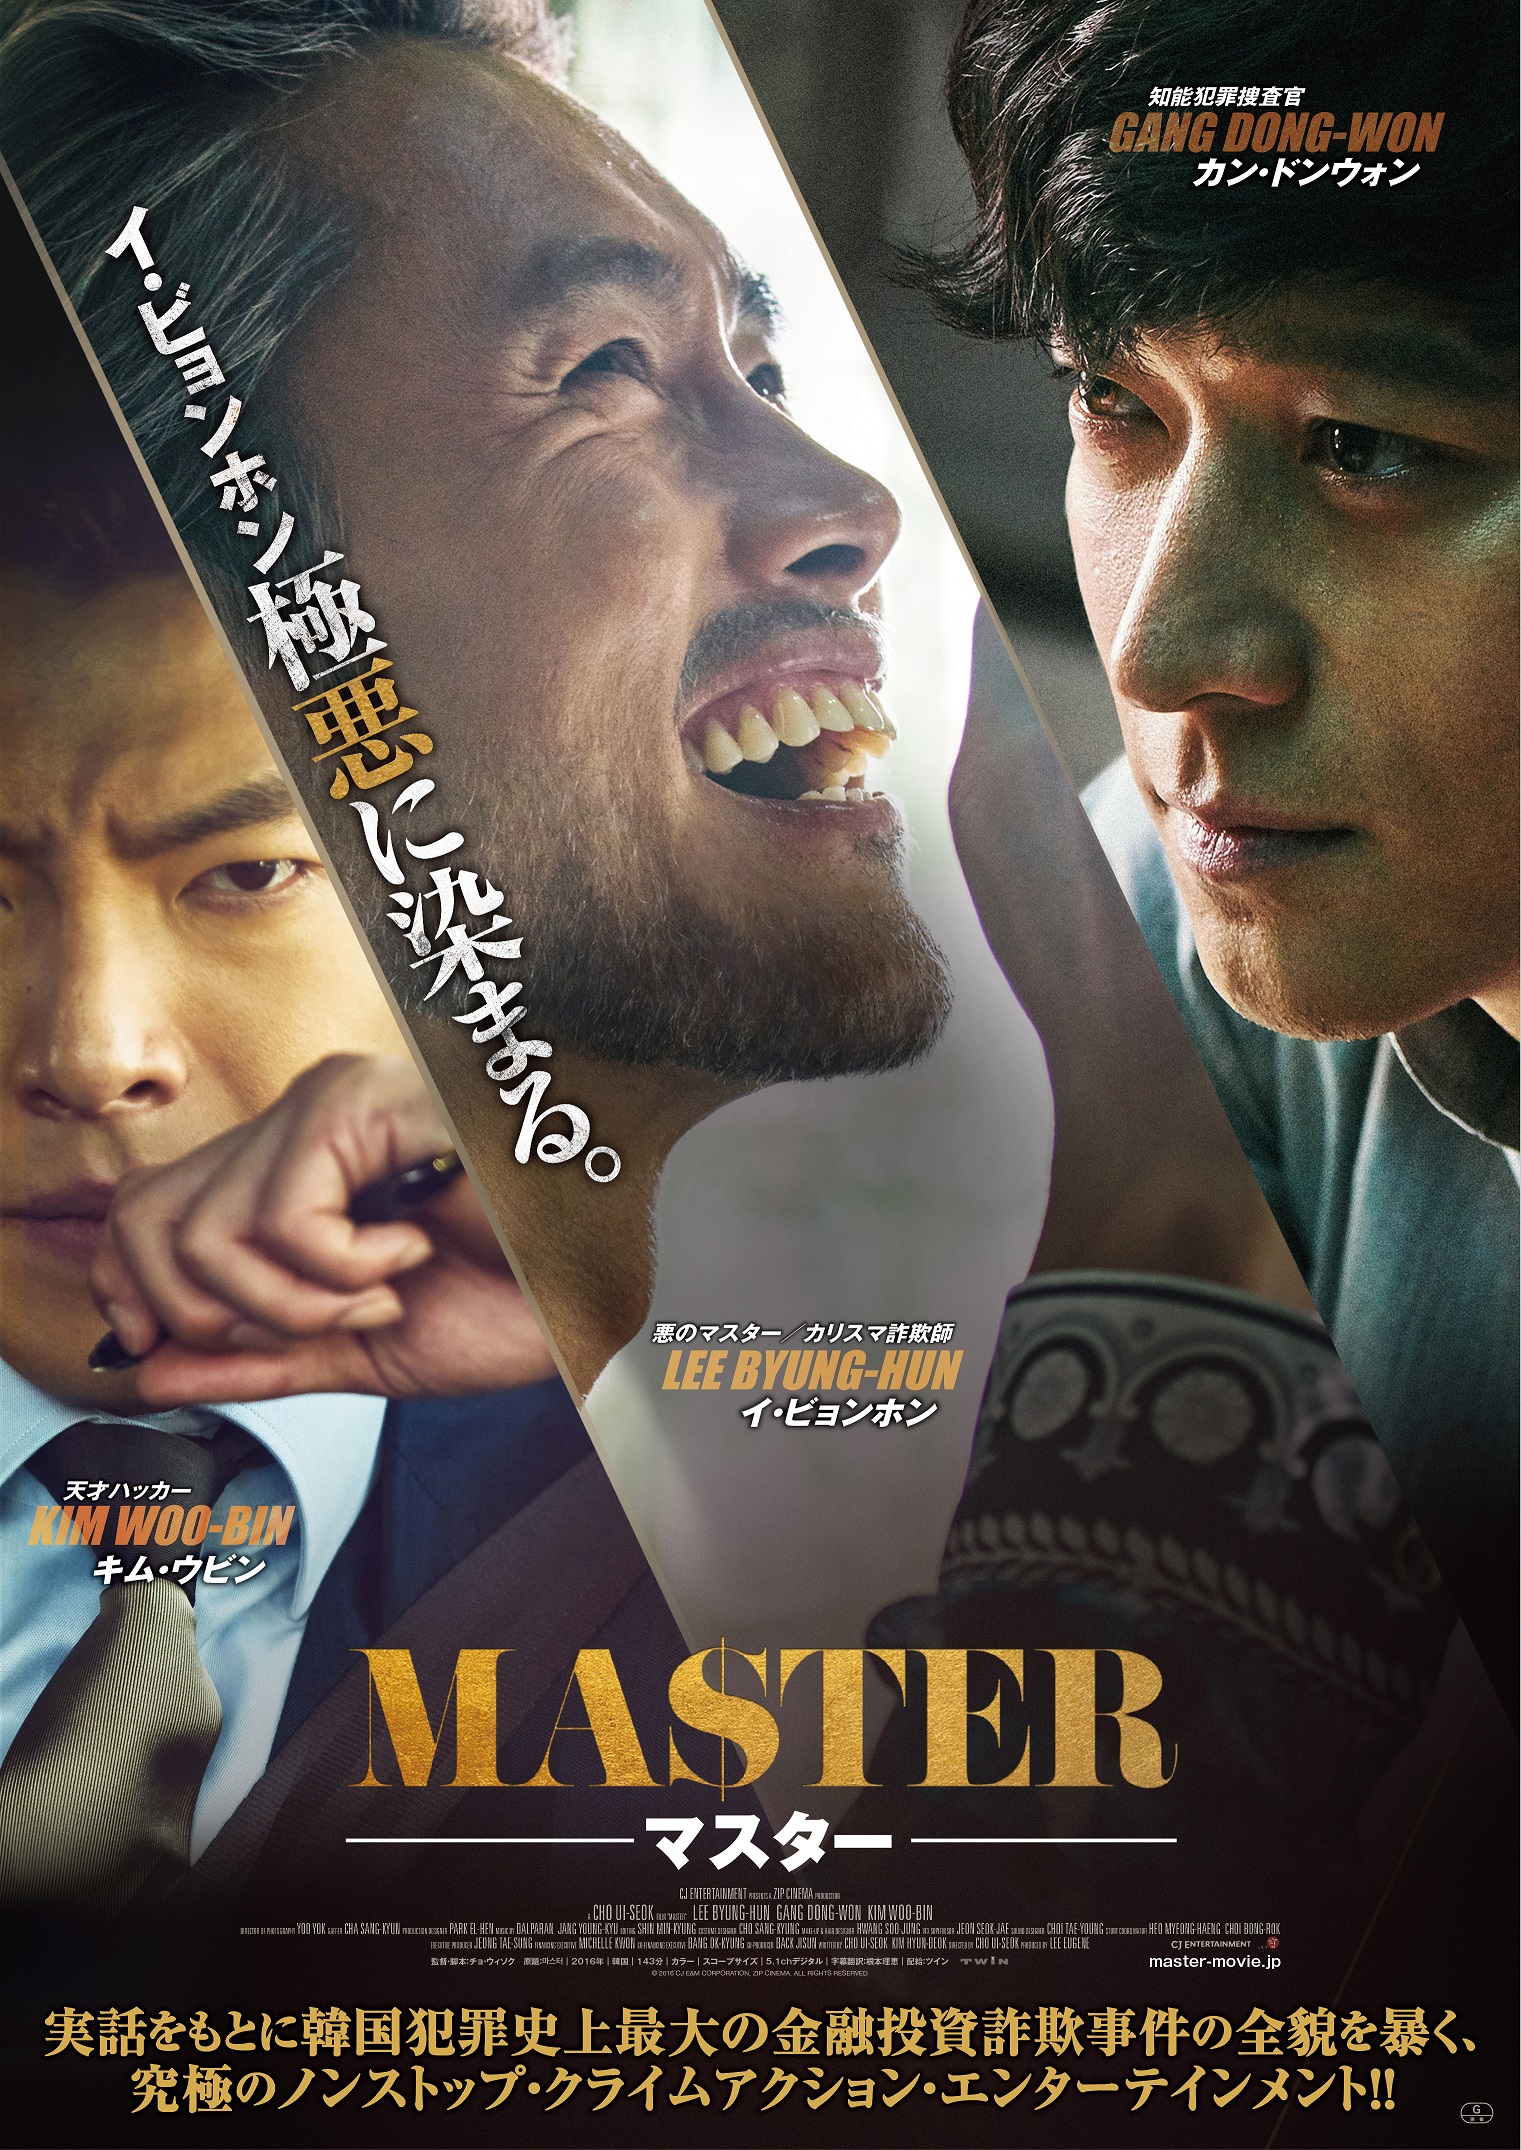 韓国映画で楽しく勉強 クライムアクション映画 마스터 Master マスター から表現あれこれno 5 韓国語で人生が変わる Oulmoonのお一人様happyライフ